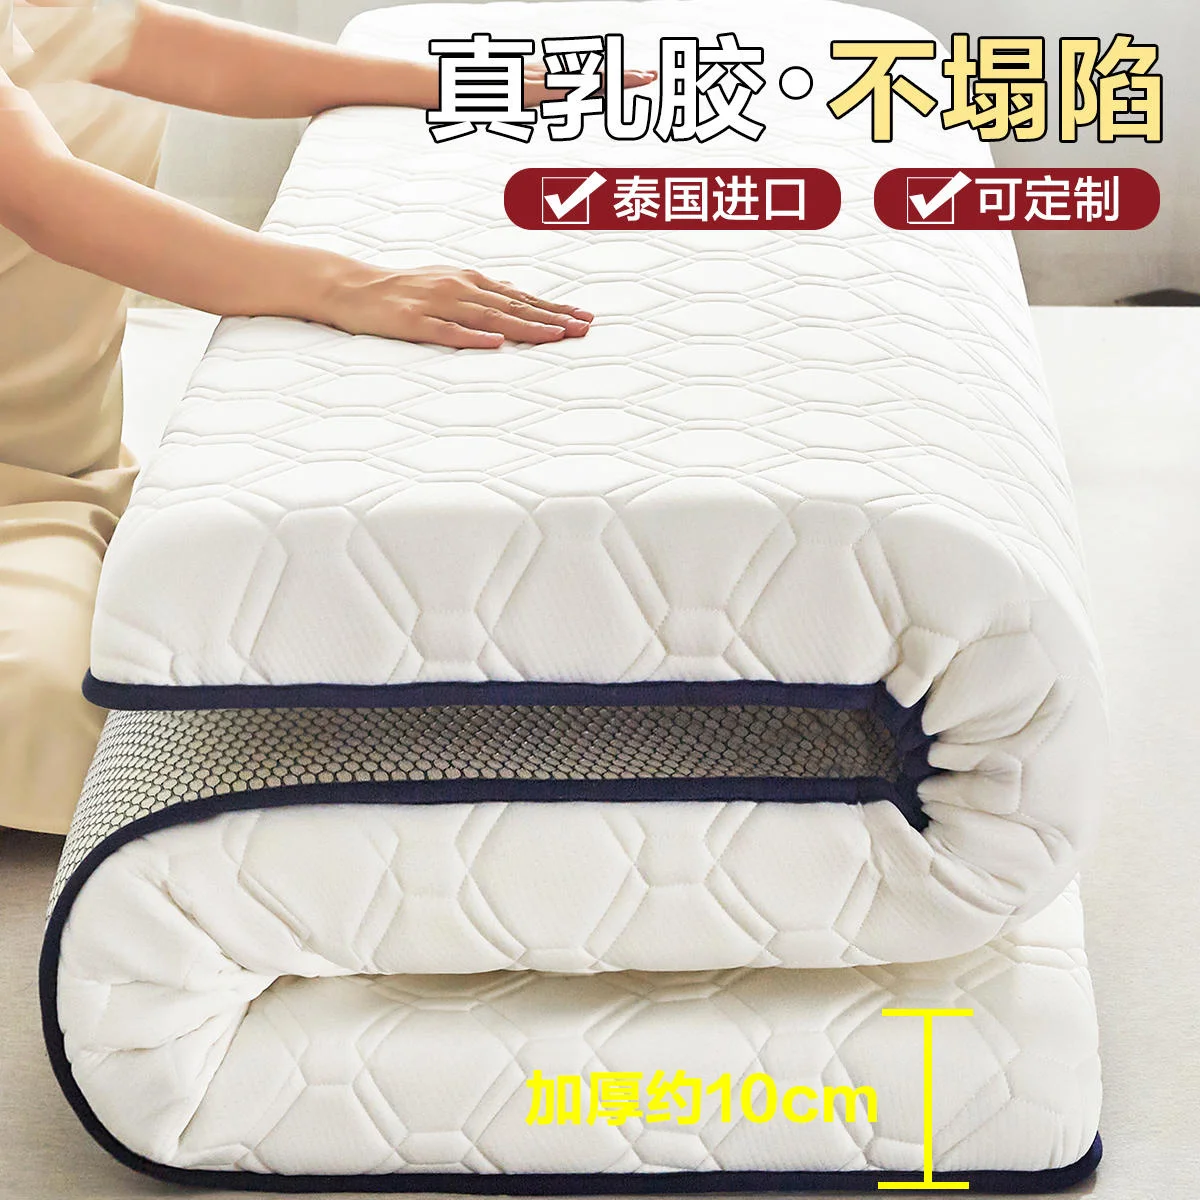 Natural Latex Mattress cushions household latex tatami mats 